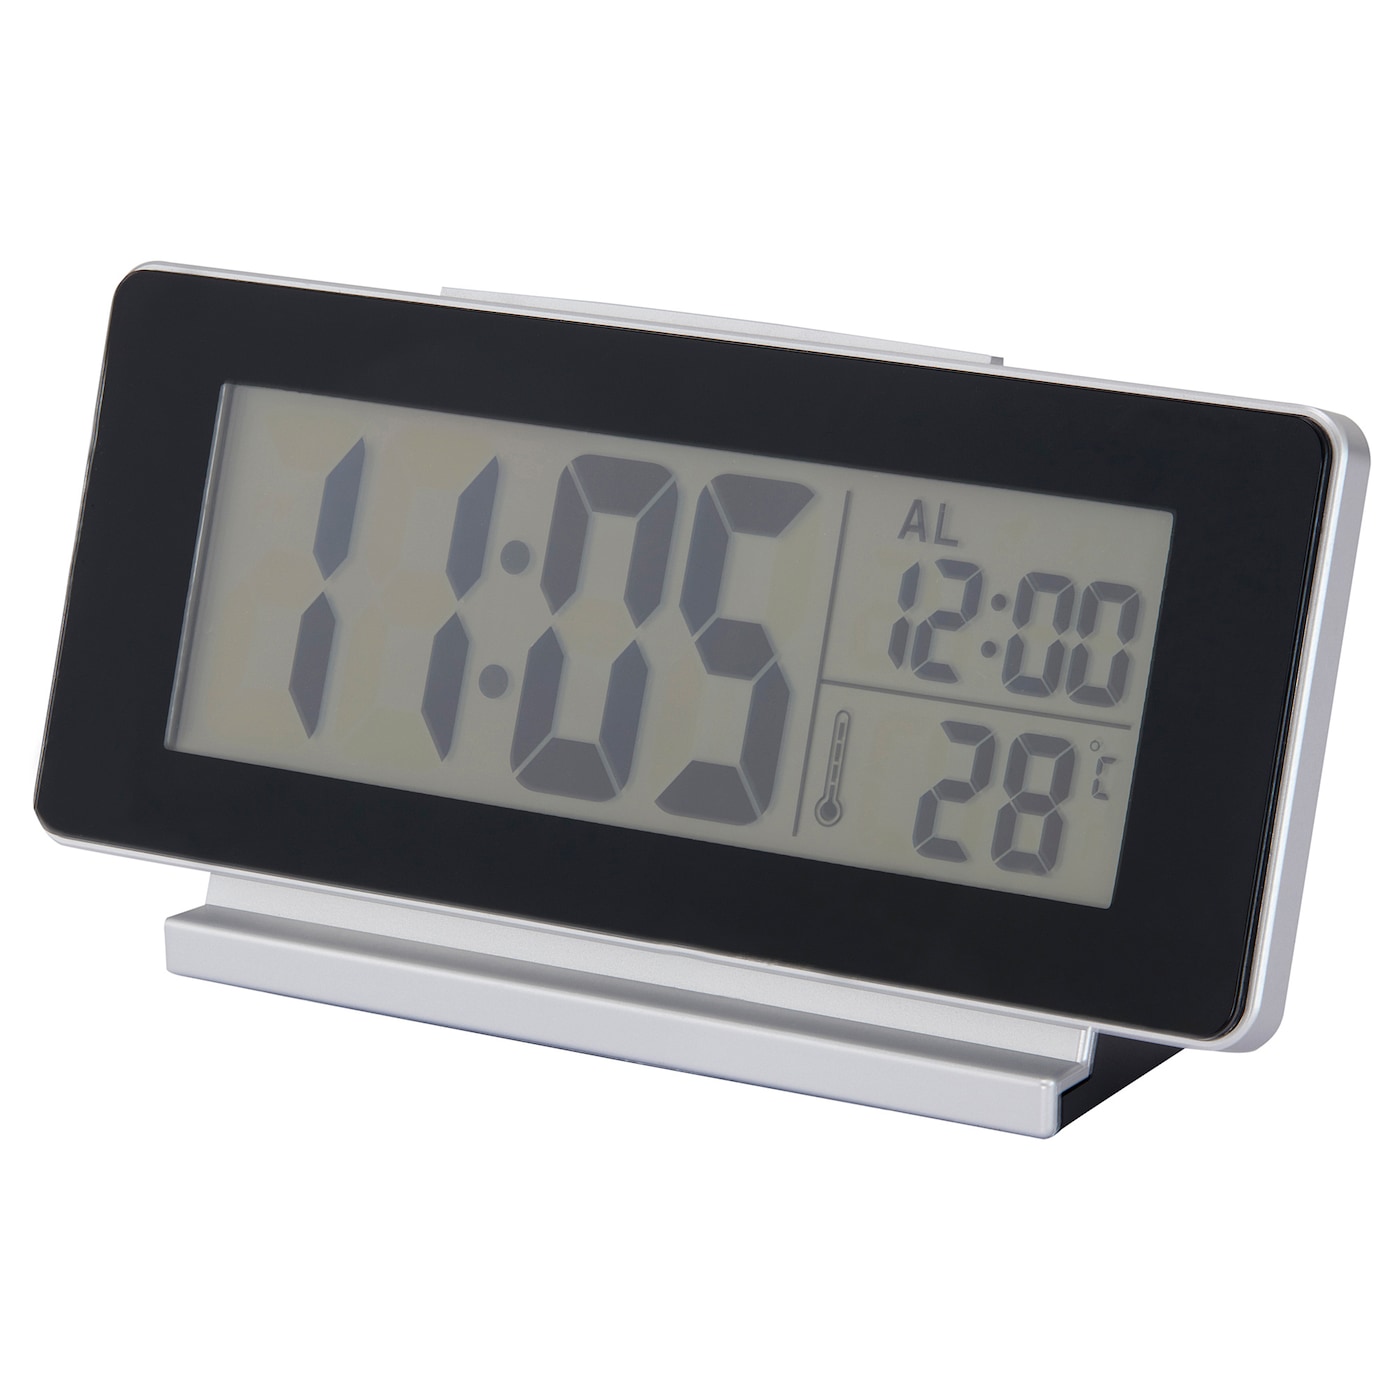 FILMIS Часы/термометр/будильник, низкое напряжение/черный, 16,5x9 см IKEA часы термометр будильник таймер lottorp ikea